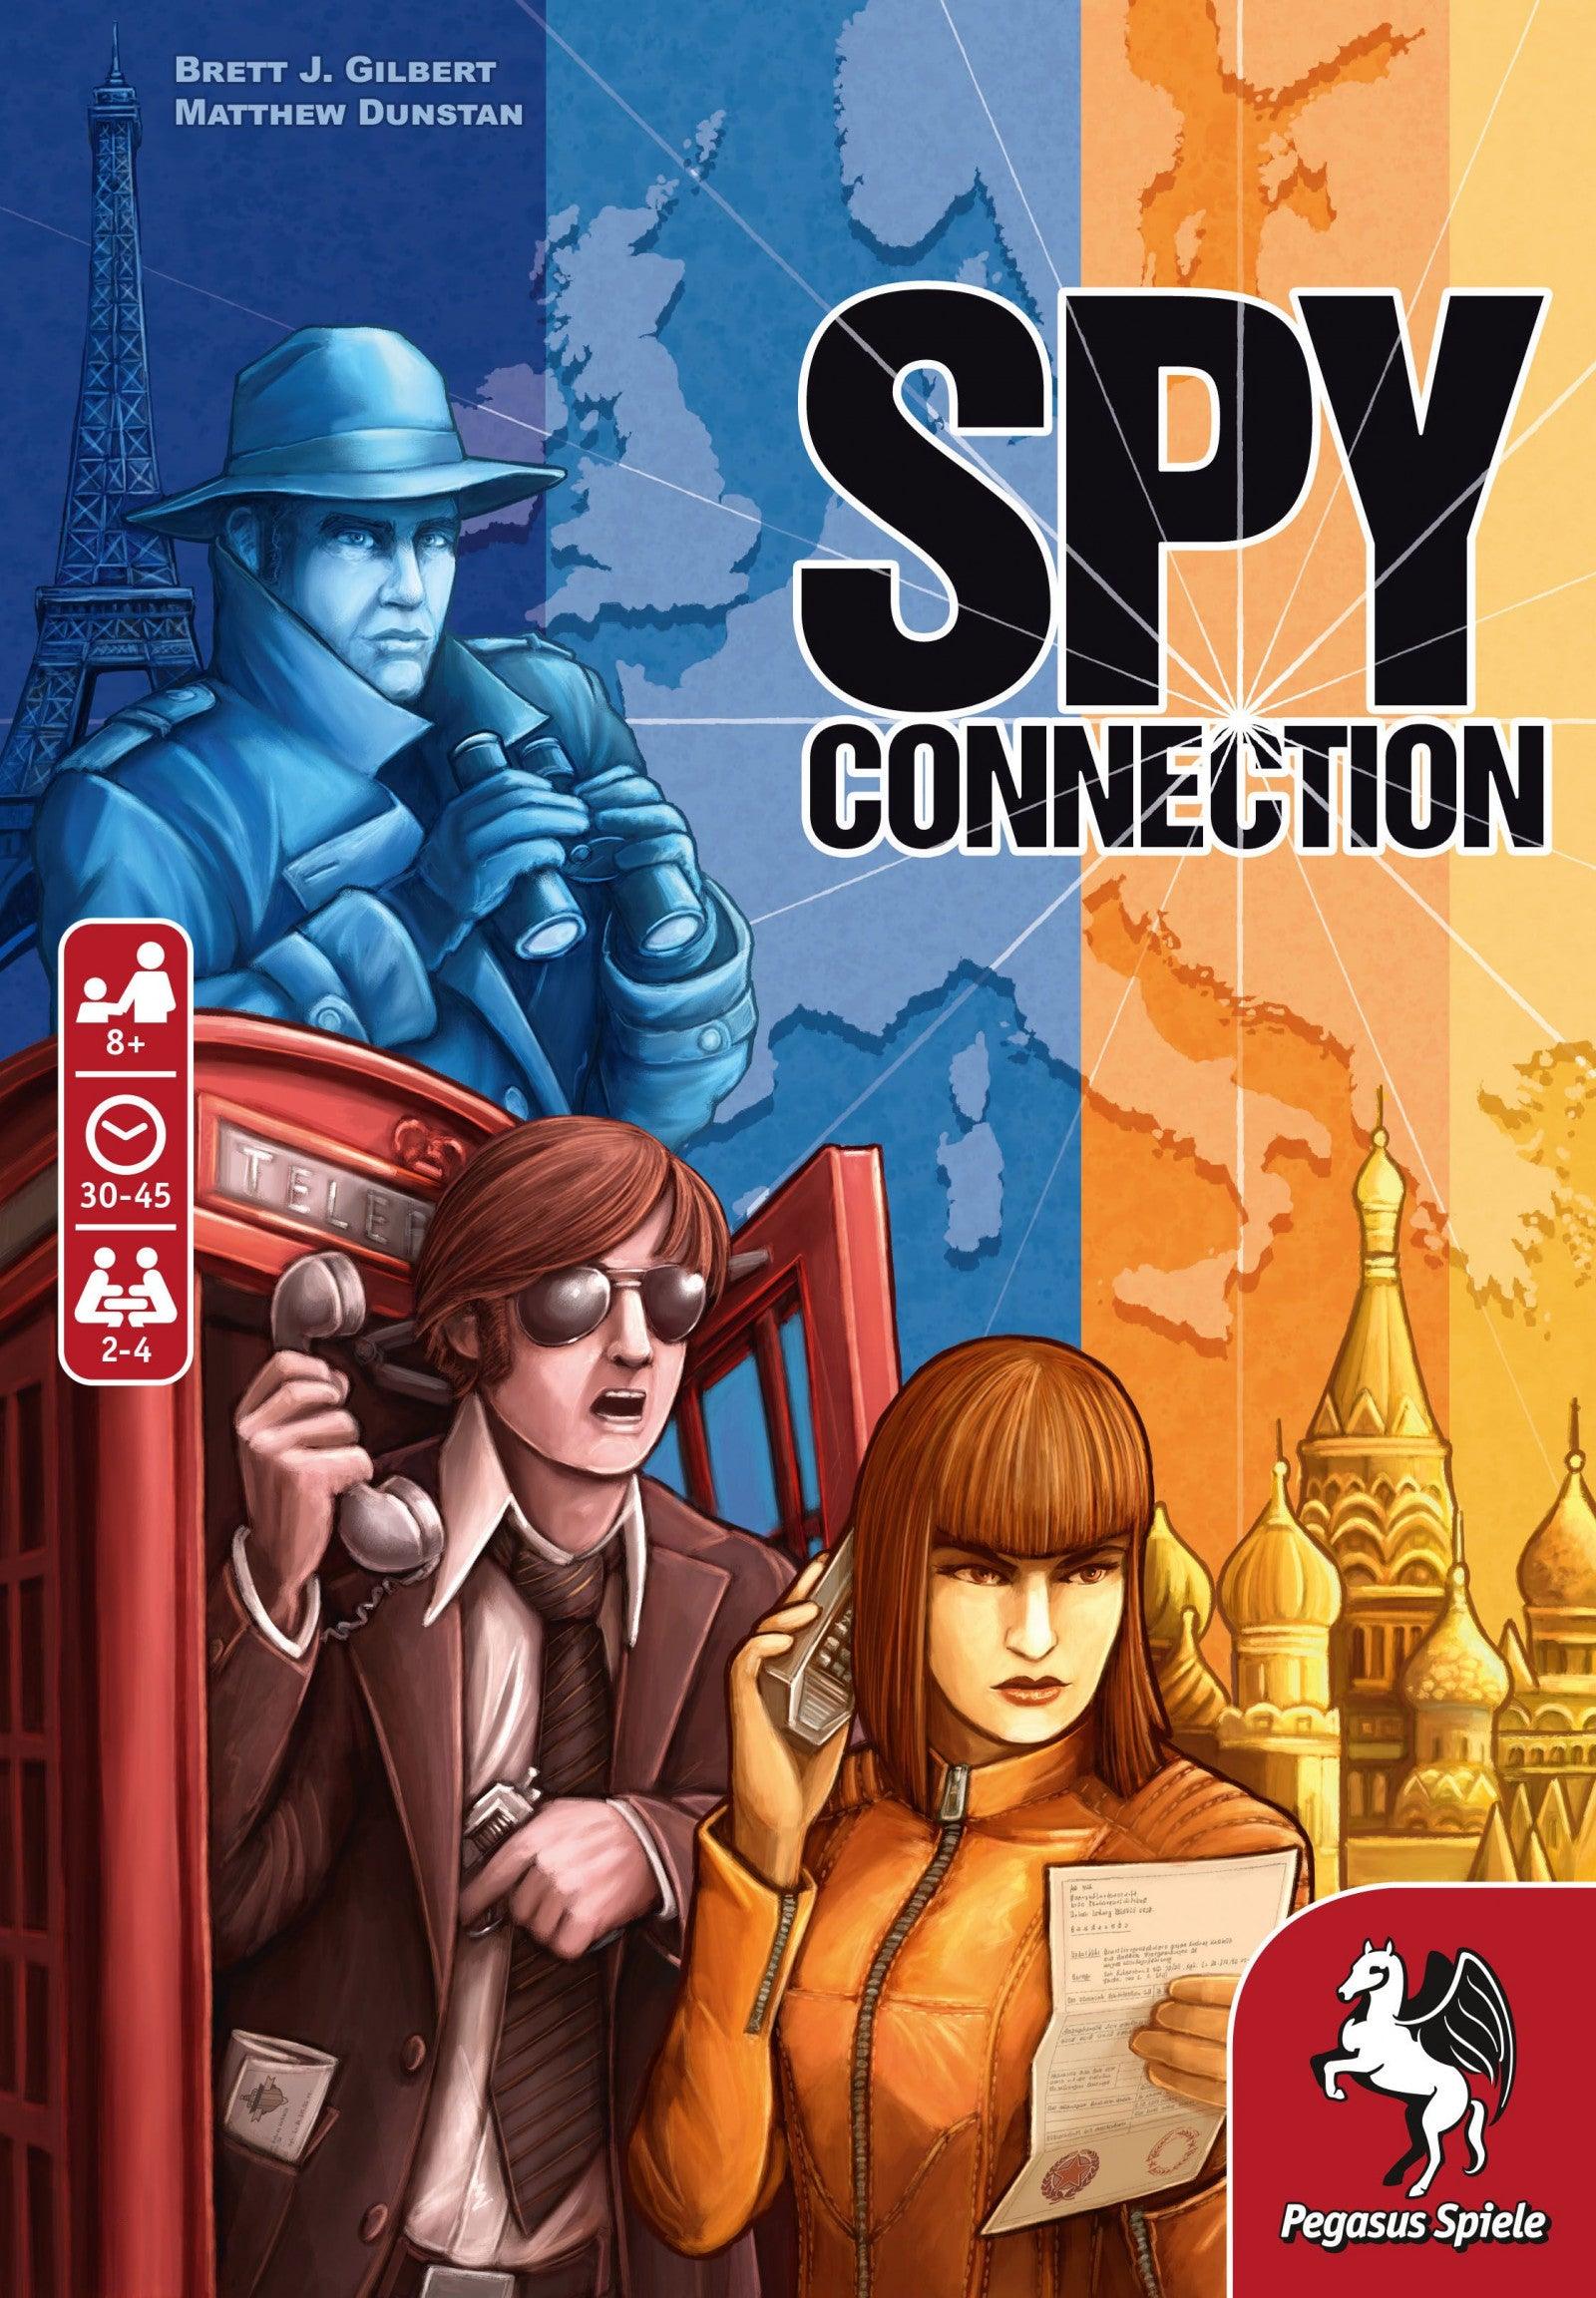 VR-96378 Spy Connection - Pegasus Spiele - Titan Pop Culture